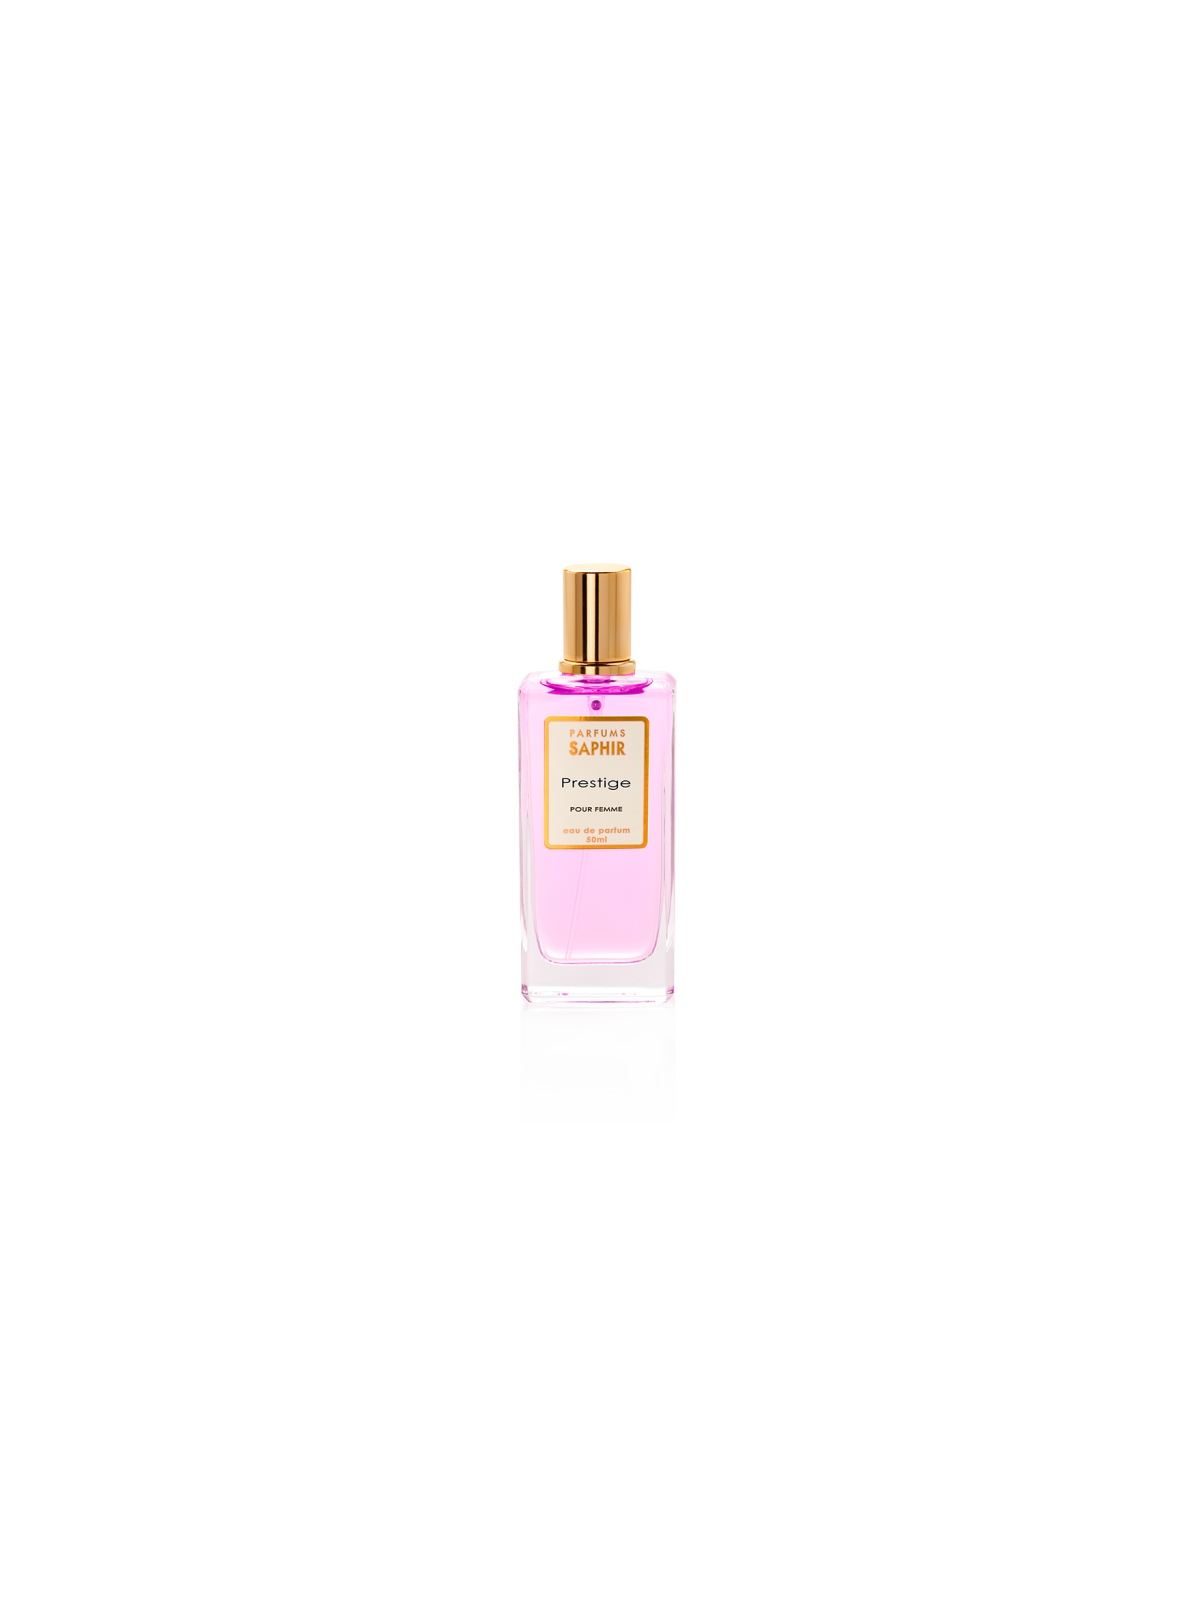 Comprar Perfume SAPHIR Prestige 50ml. en Perfumes para mujer por sólo 4,95 € o un precio específico de 4,95 € en Thalie Care